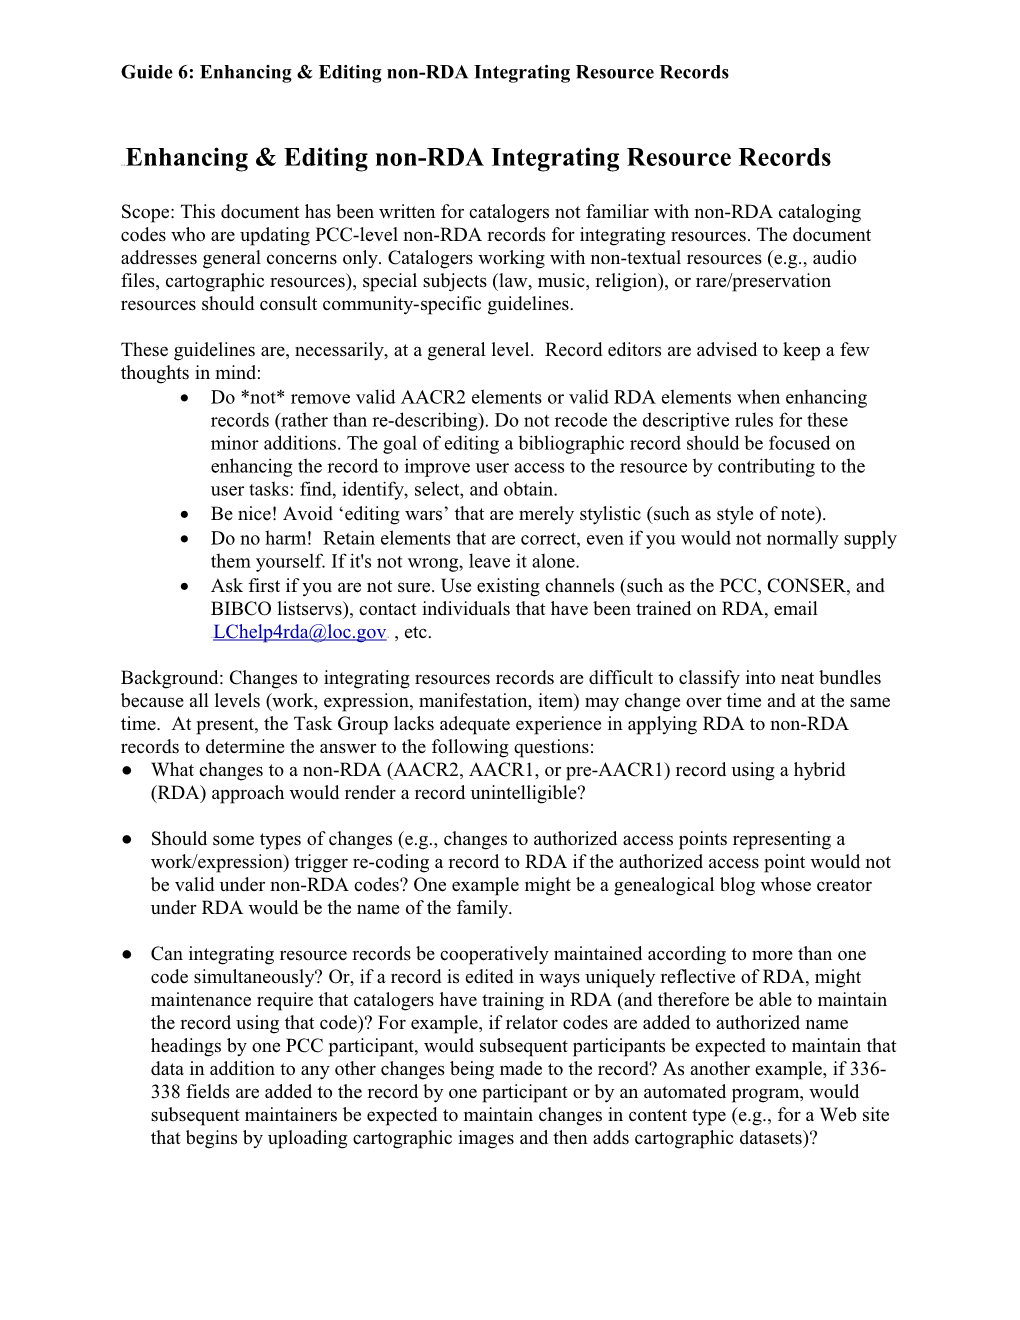 Enhancing & Editing Non-RDA Integrating Resource Records